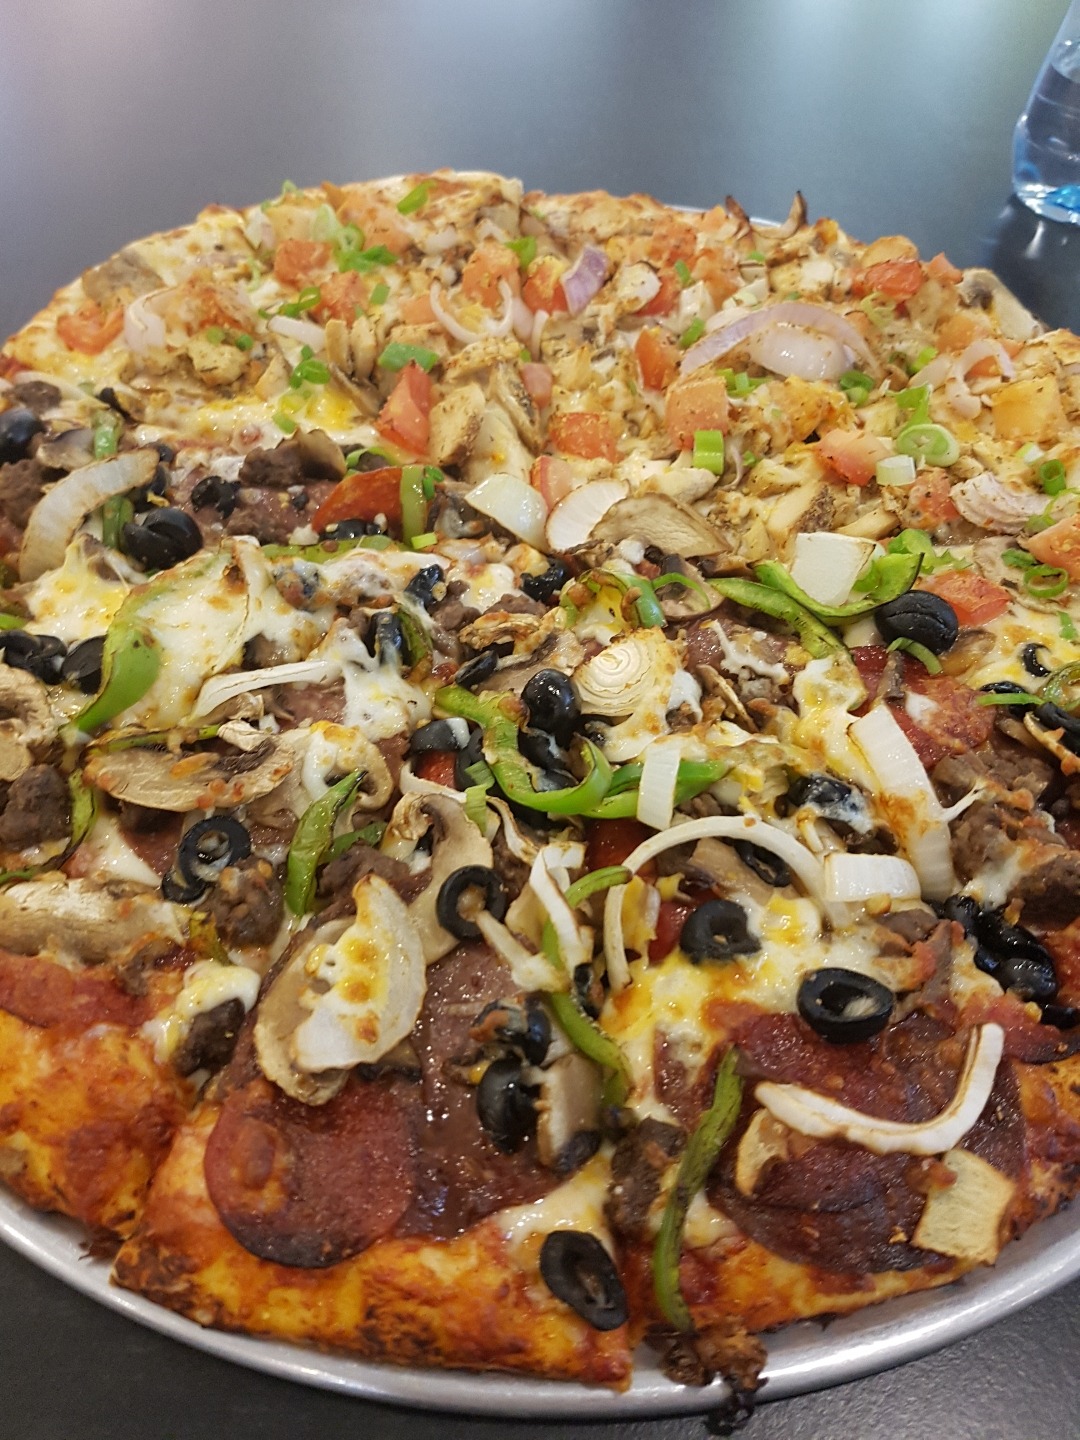 half meet half chicken. tasty @ Round Table Pizza - Bahrain